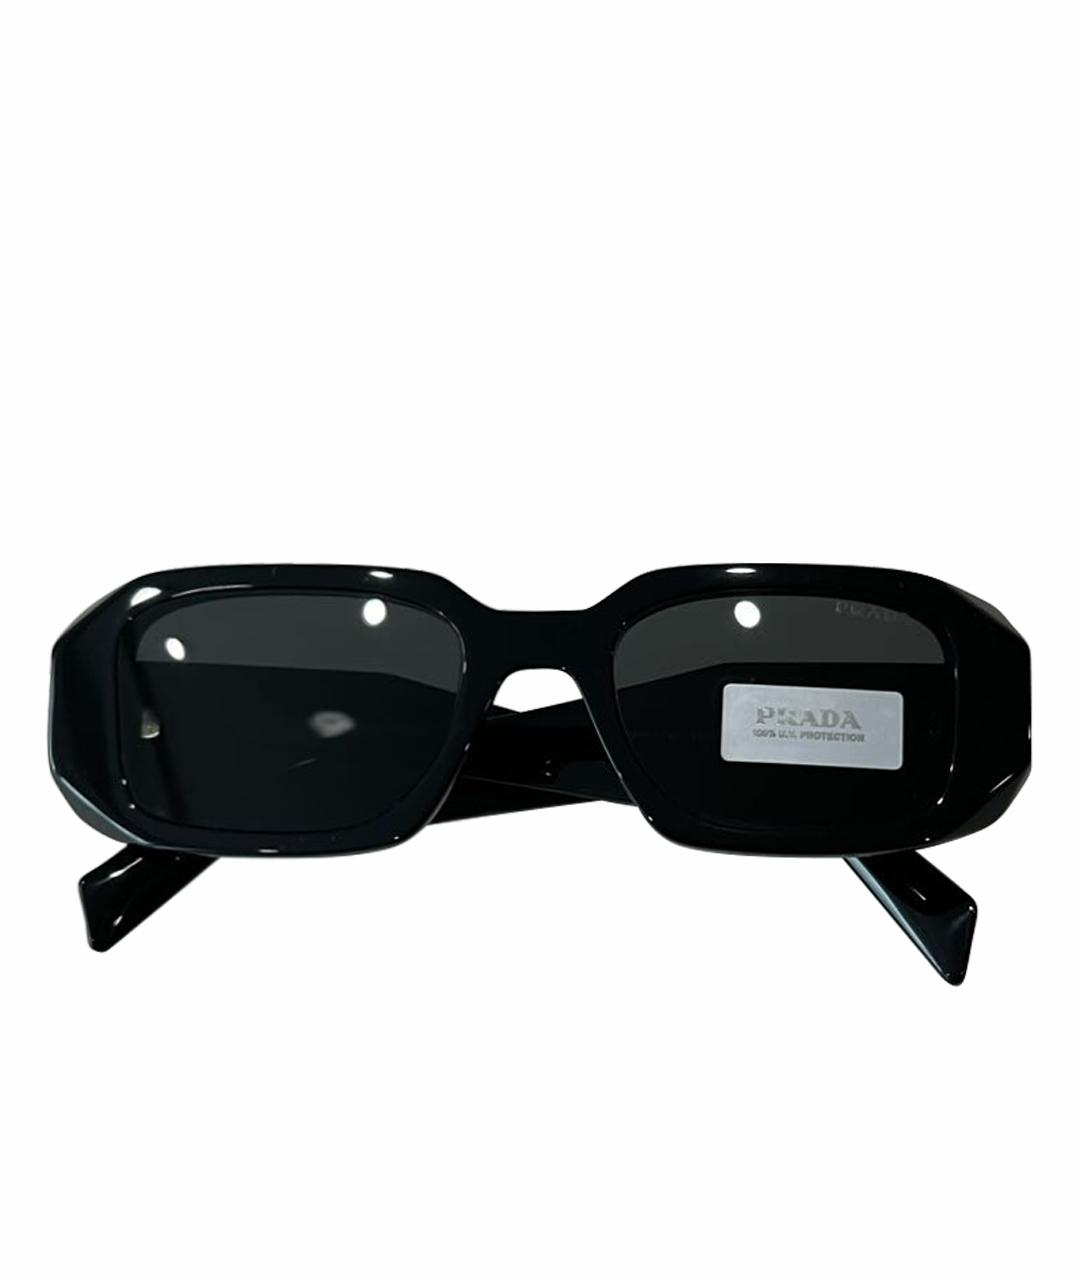 PRADA Черные солнцезащитные очки, фото 1